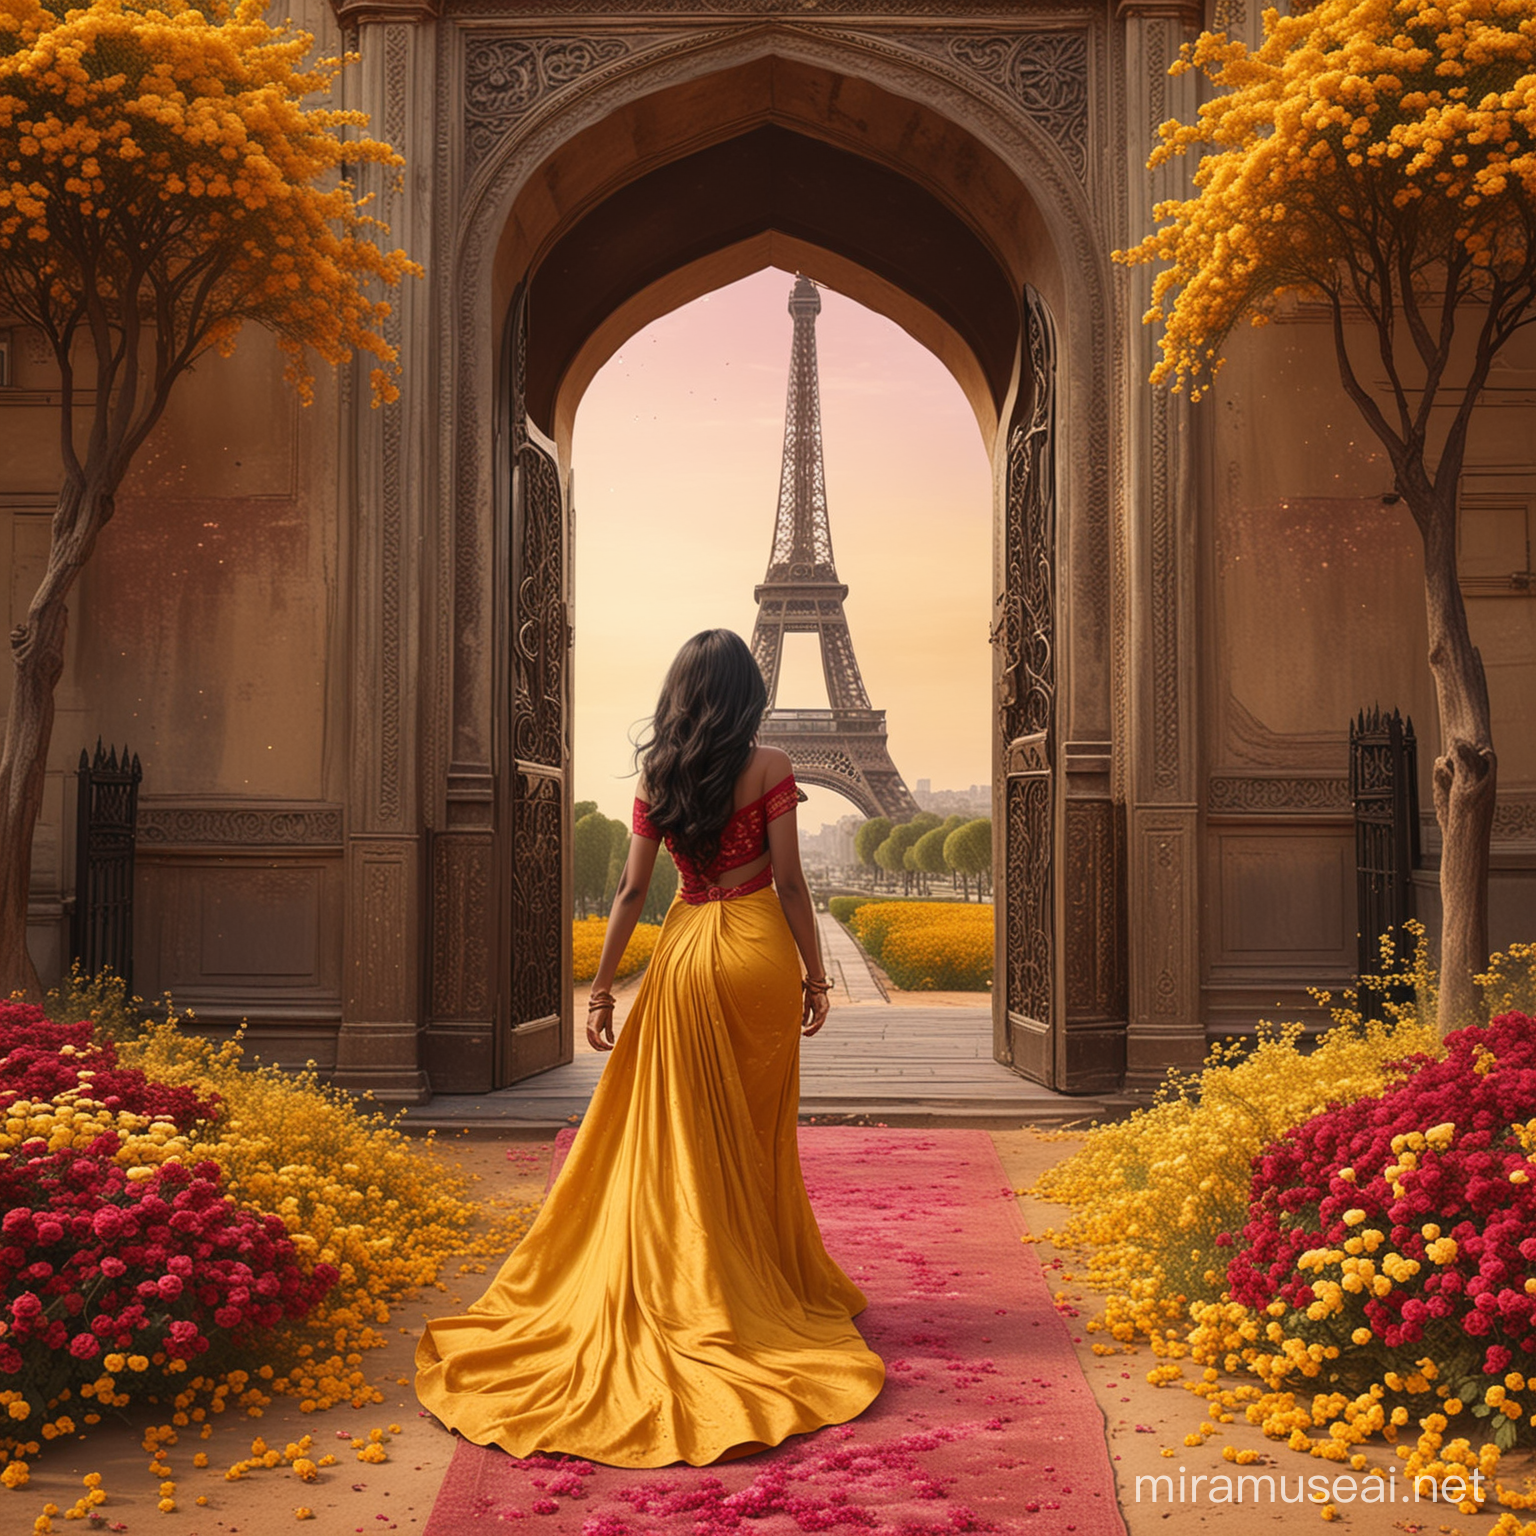 Elegant Indian Princess Walking to Golden Arabian Door Amidst Floral Splendor